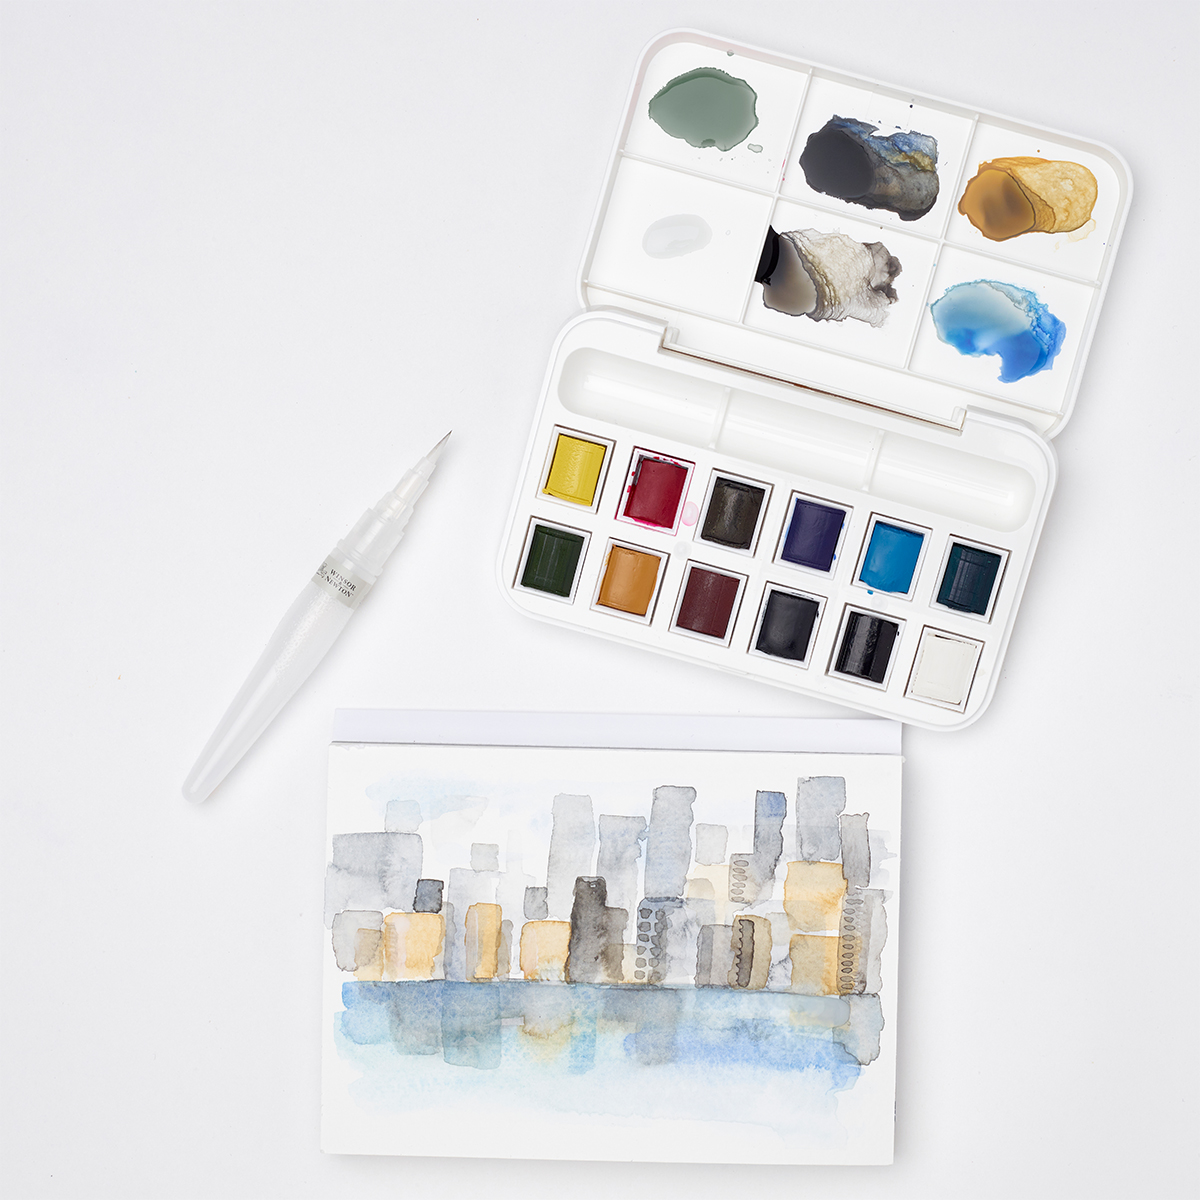 Cotman Brush Pen Set i gruppen Kunstnerartikler / Farver / Akvarelfarver hos Pen Store (107245)